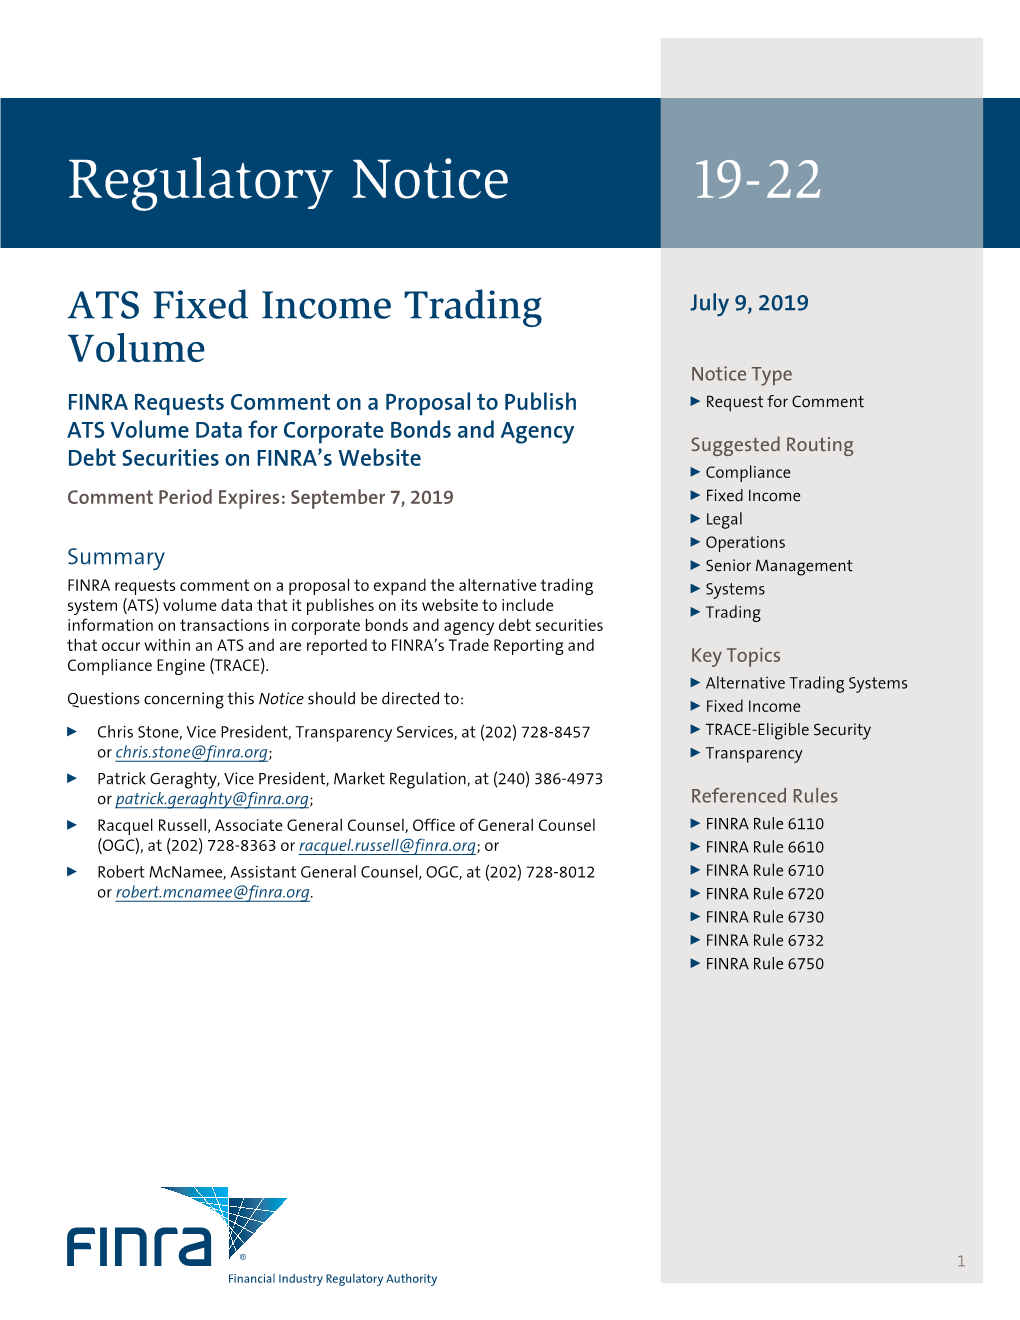 Regulatory Notice 19-22